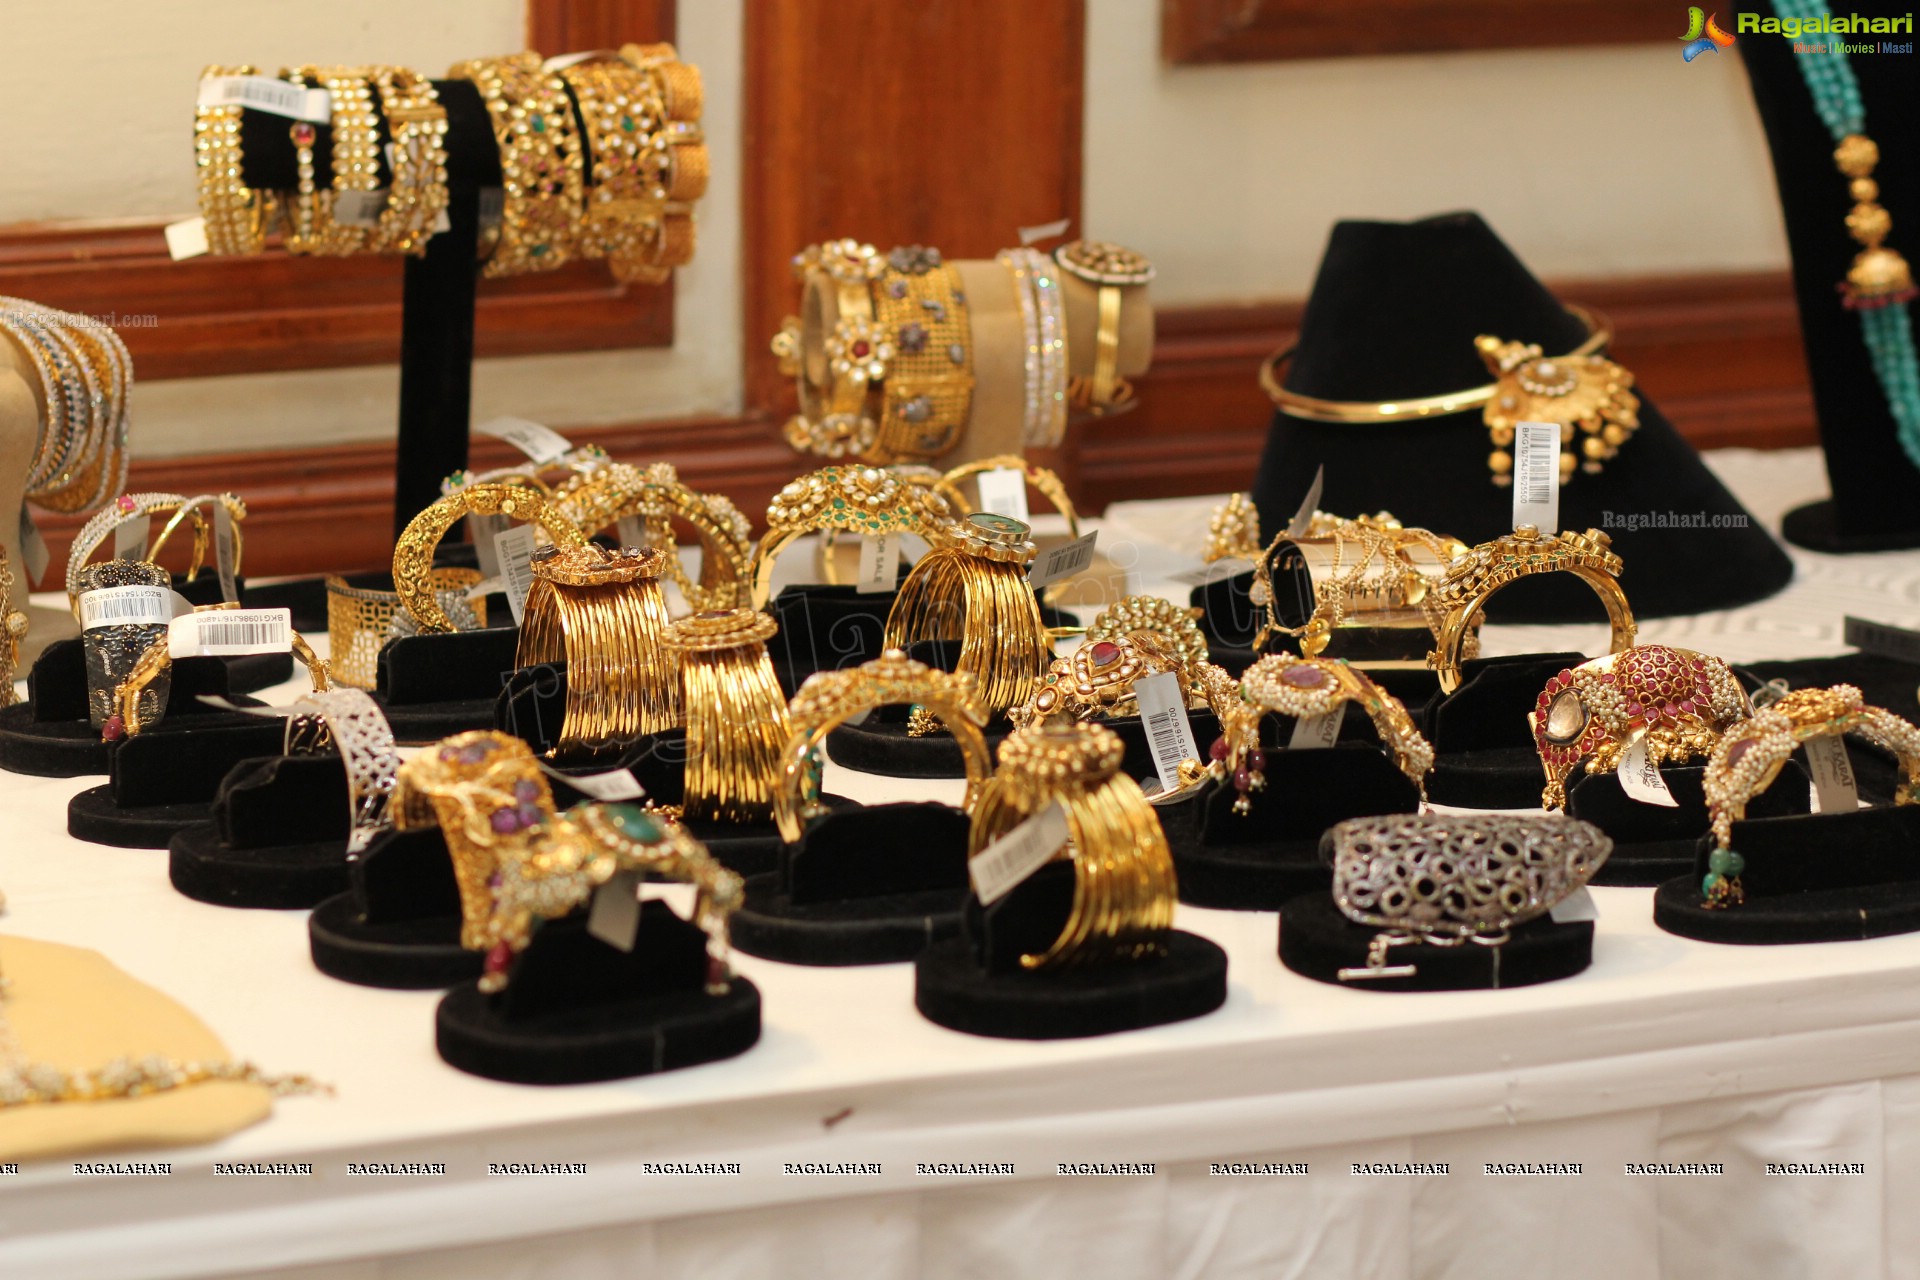 Art Karat's Maratha - The Jewels of Bajirao Mastani Jewellery Show at Taj Deccan, Hyderabad